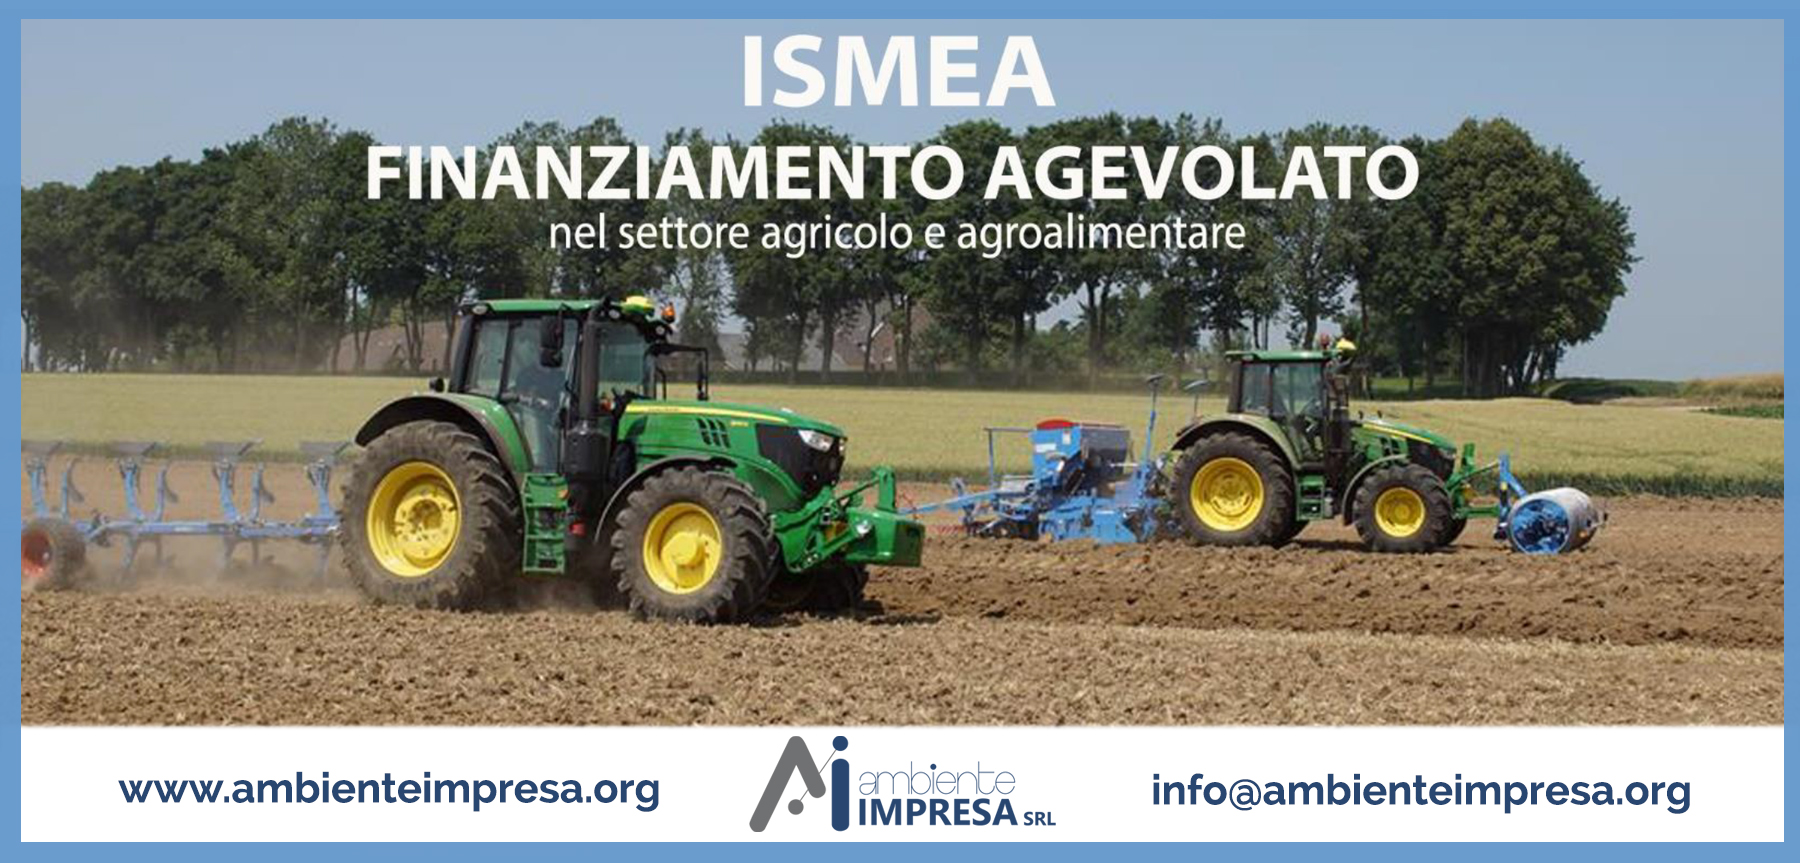 ISMEA INVESTE - Finanziamento Agevolato nel settore agricolo e Agroalimentare - Ambiente Impresa srl - Cagliari - Bandi Nazionali